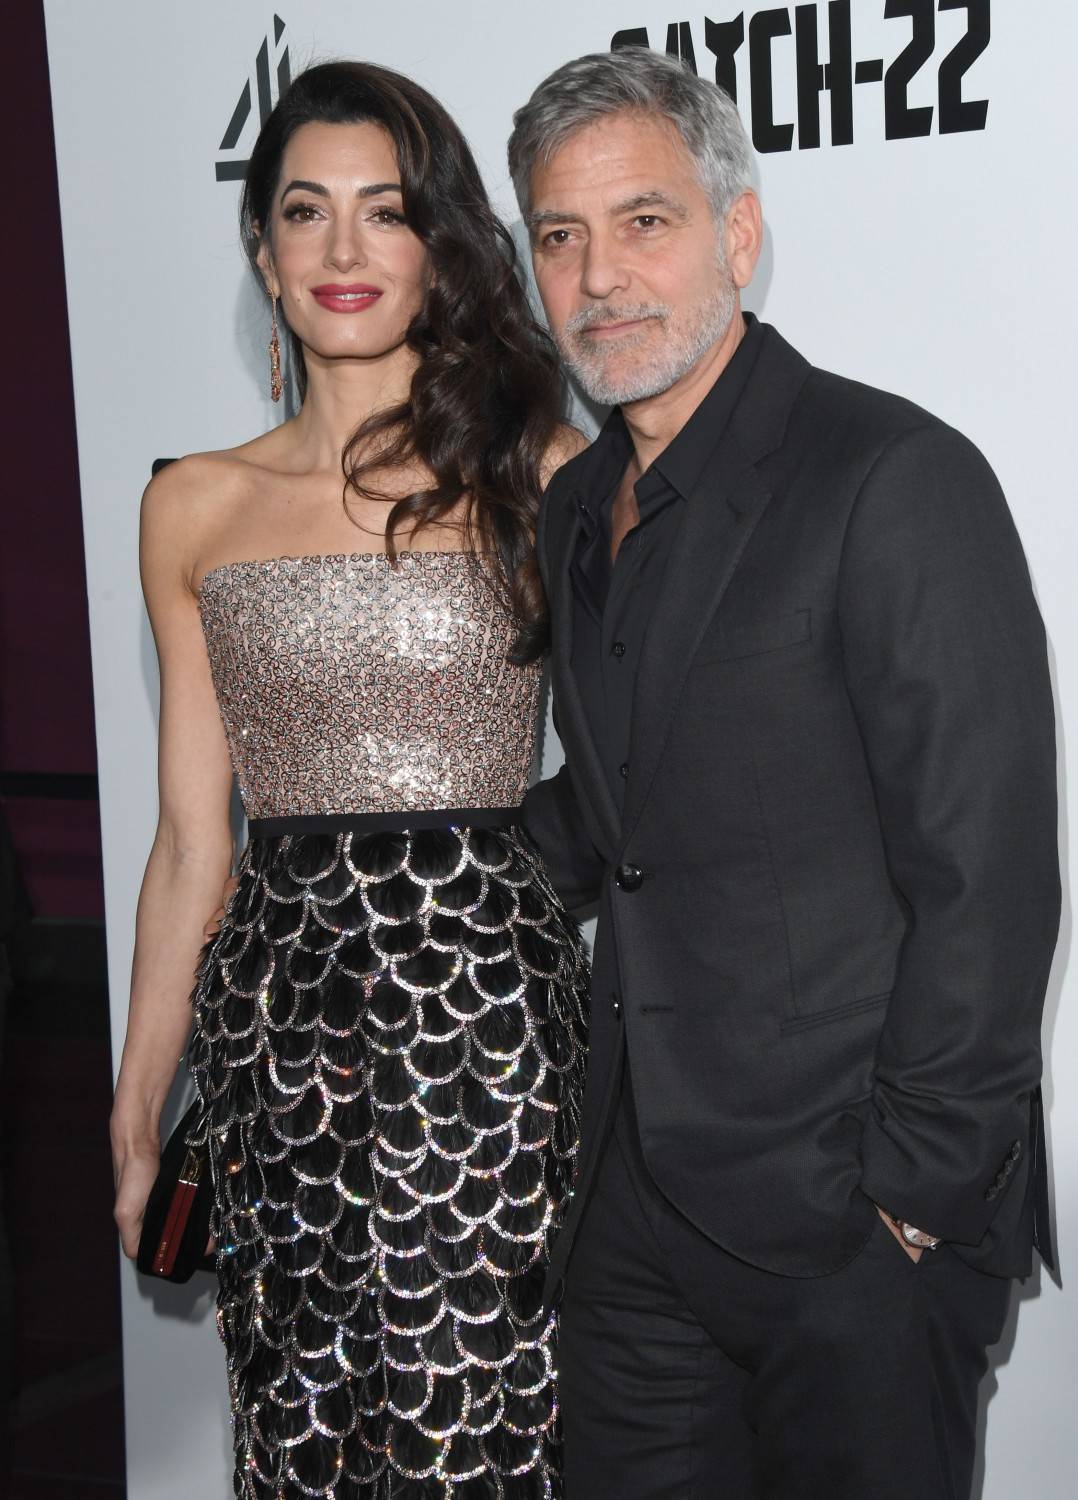 George Clooney per beneficenza mette in palio un pranzo a Como con lui e sua moglie